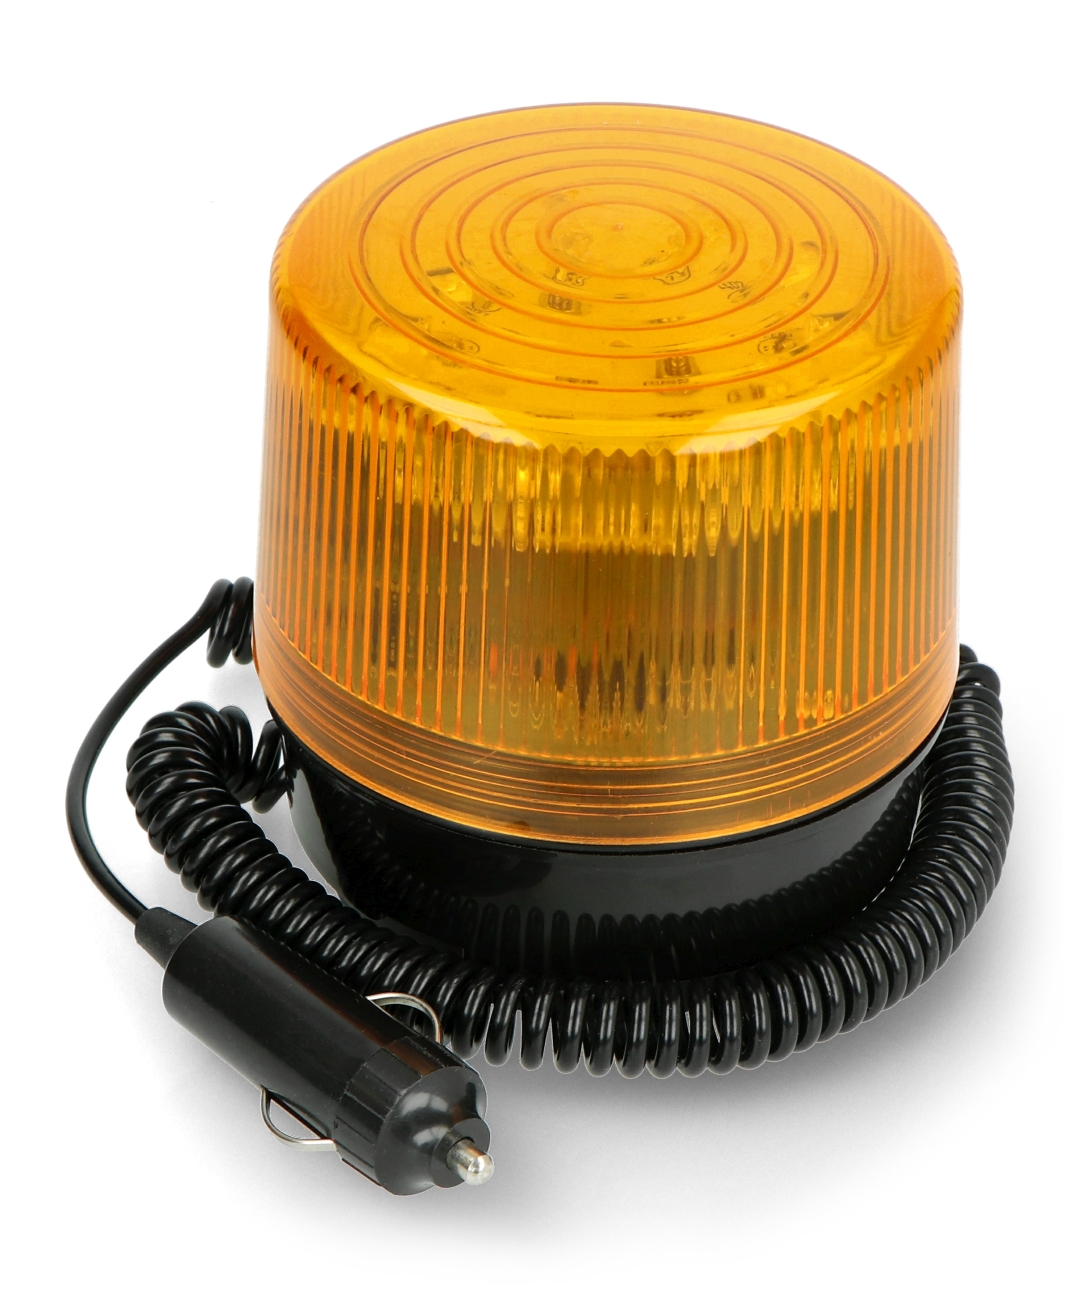 Flashing light LED 12V magnetic - orange Botland - Robotic Shop